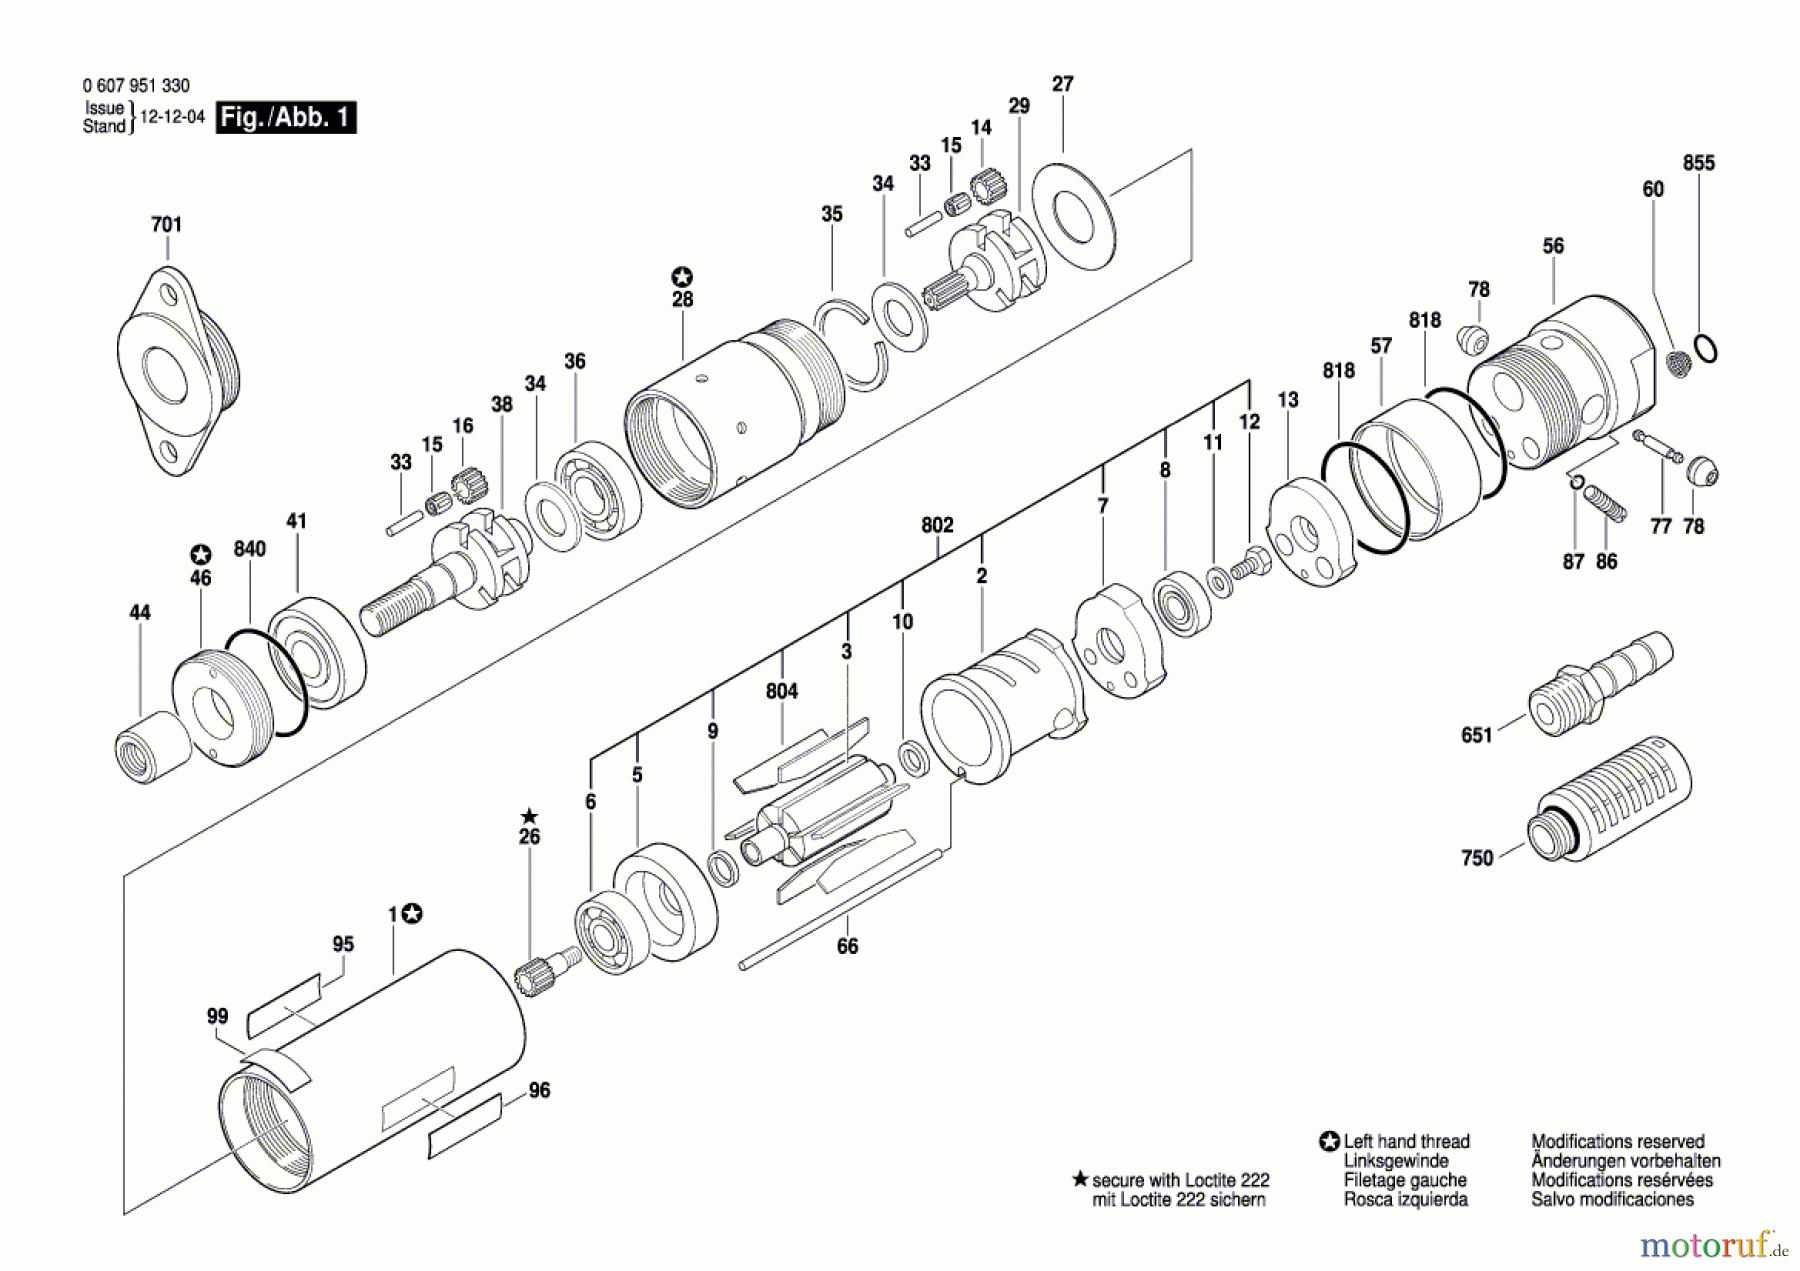  Bosch Werkzeug Einbaumotor 370 WATT-SERIE Seite 1